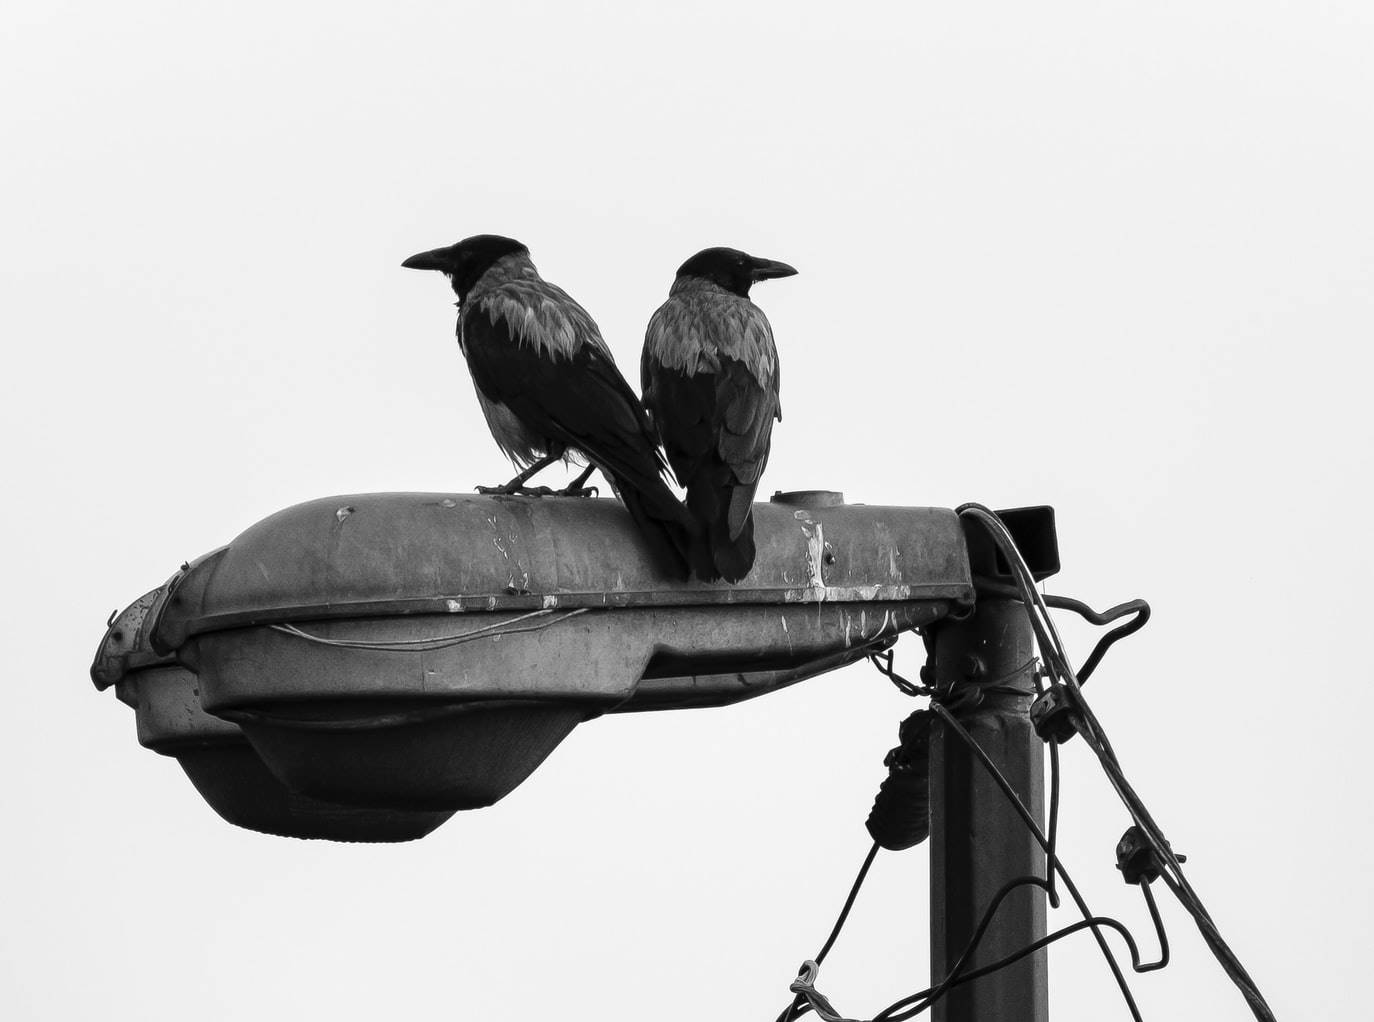 Vrane bi uskoro mogle da počnu da rade za švedsku gradsku čistoću